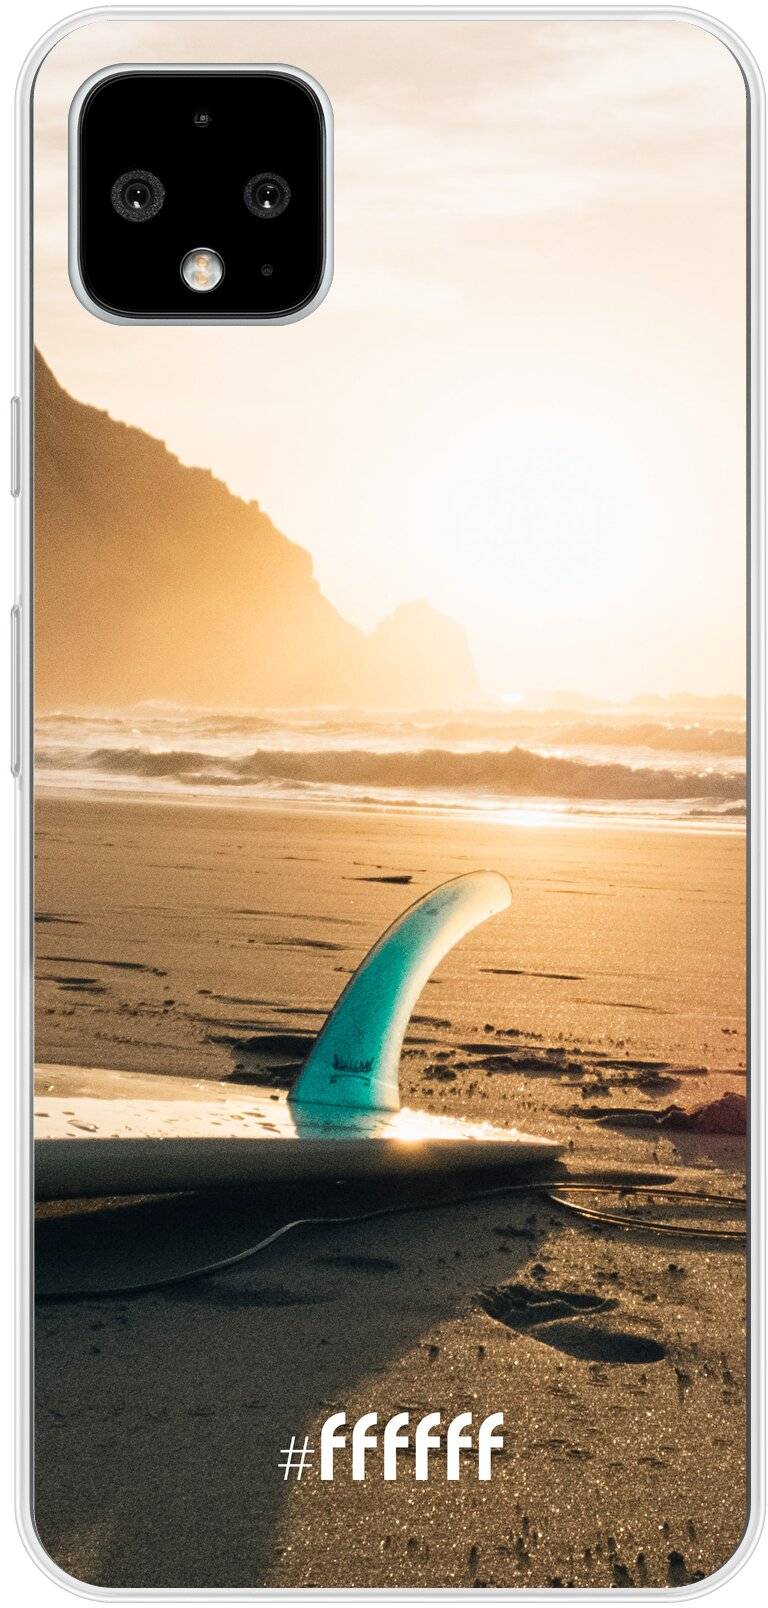 Sunset Surf Pixel 4 XL